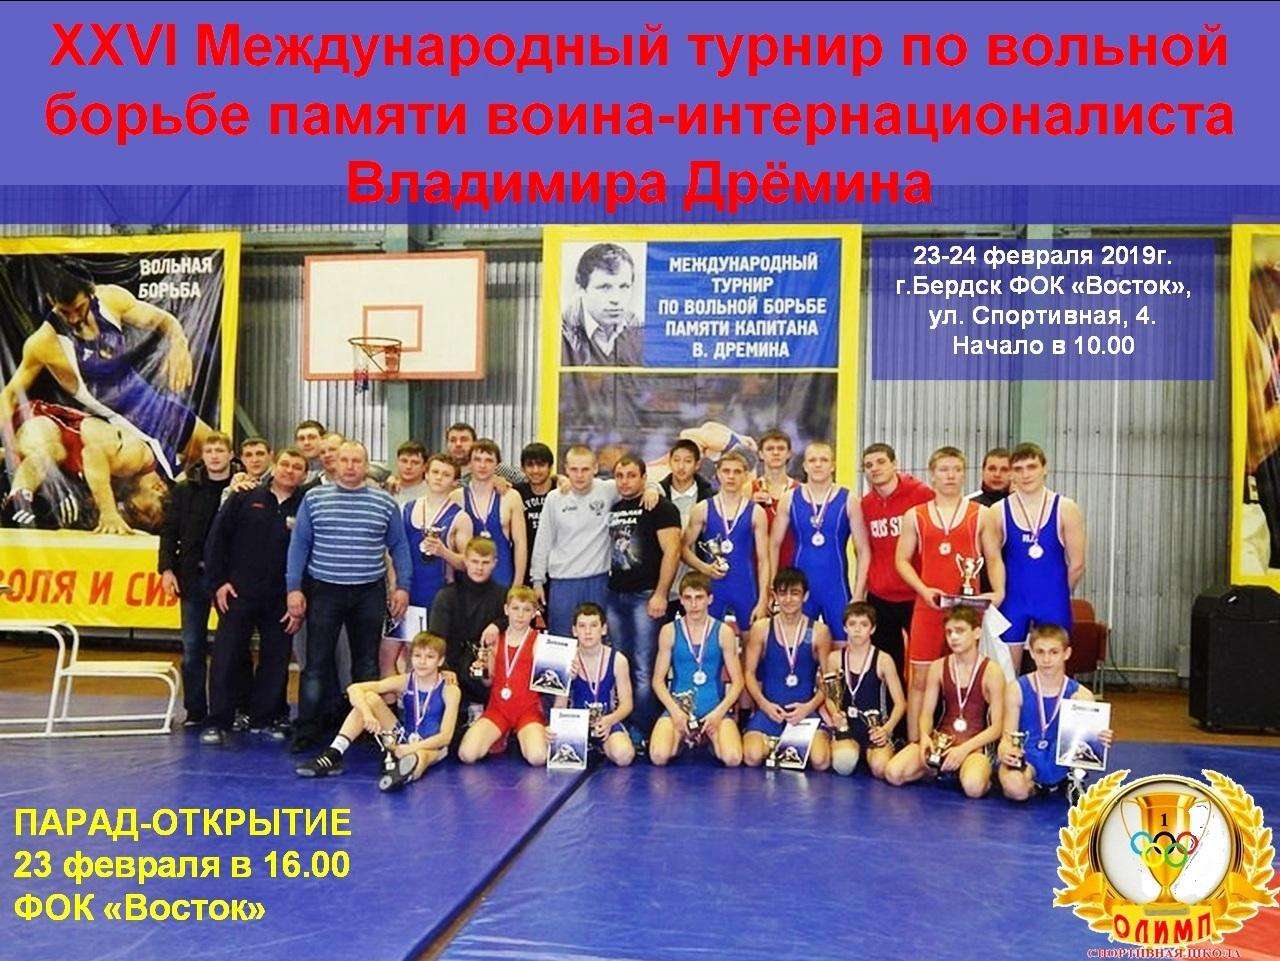 XXVI международный турнир по вольной борьбе памяти Дрёмина состоится в Бердске